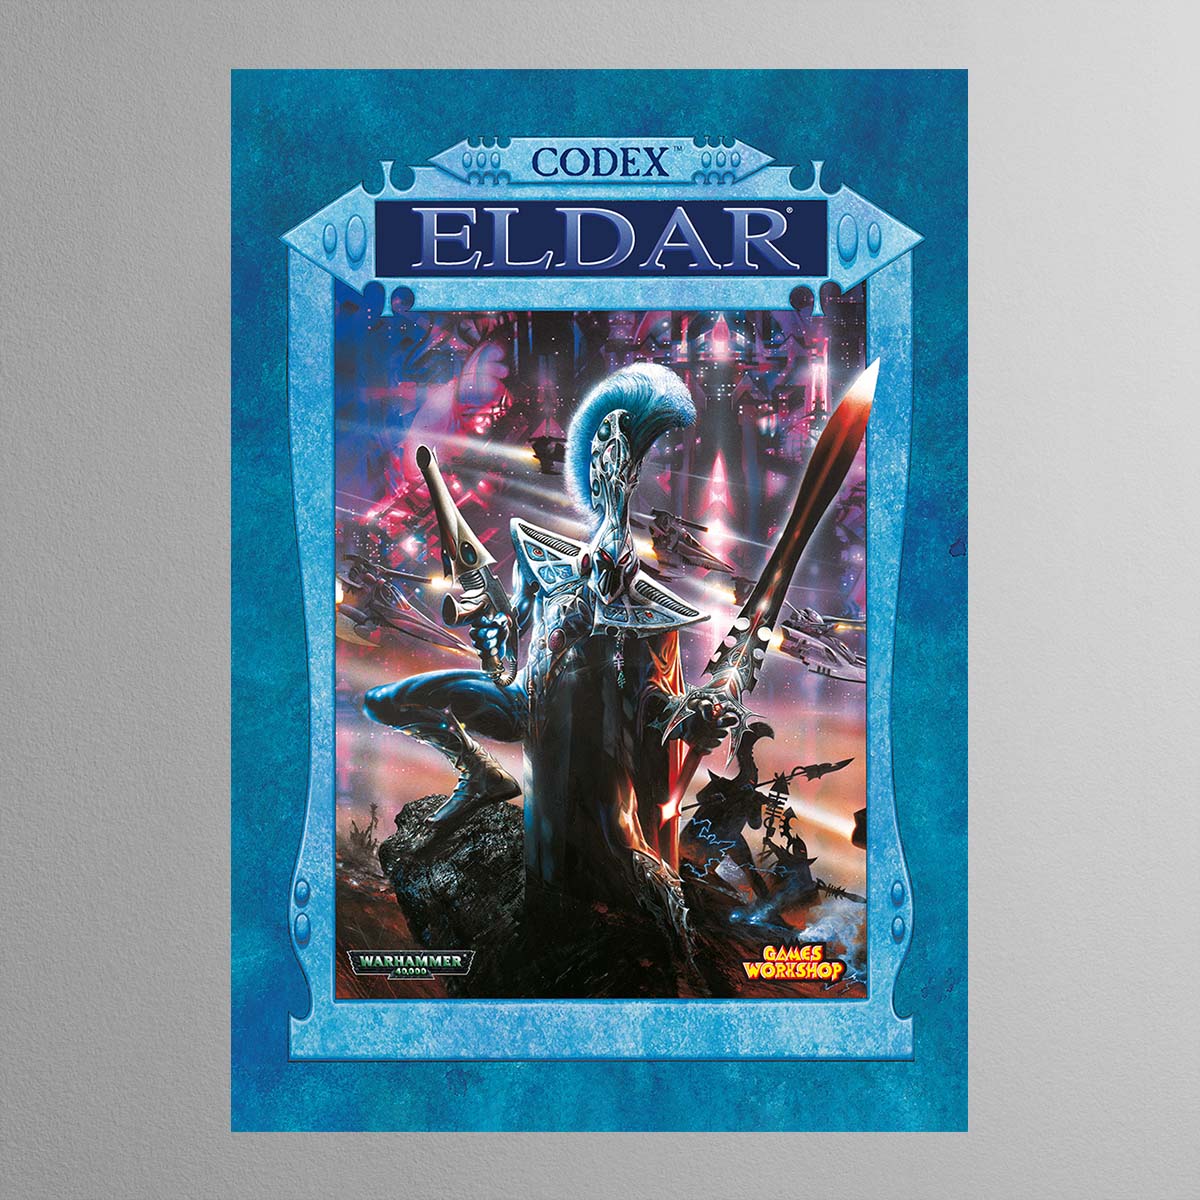 Warhammer 40,000 3rd Edition – Eldar – Print